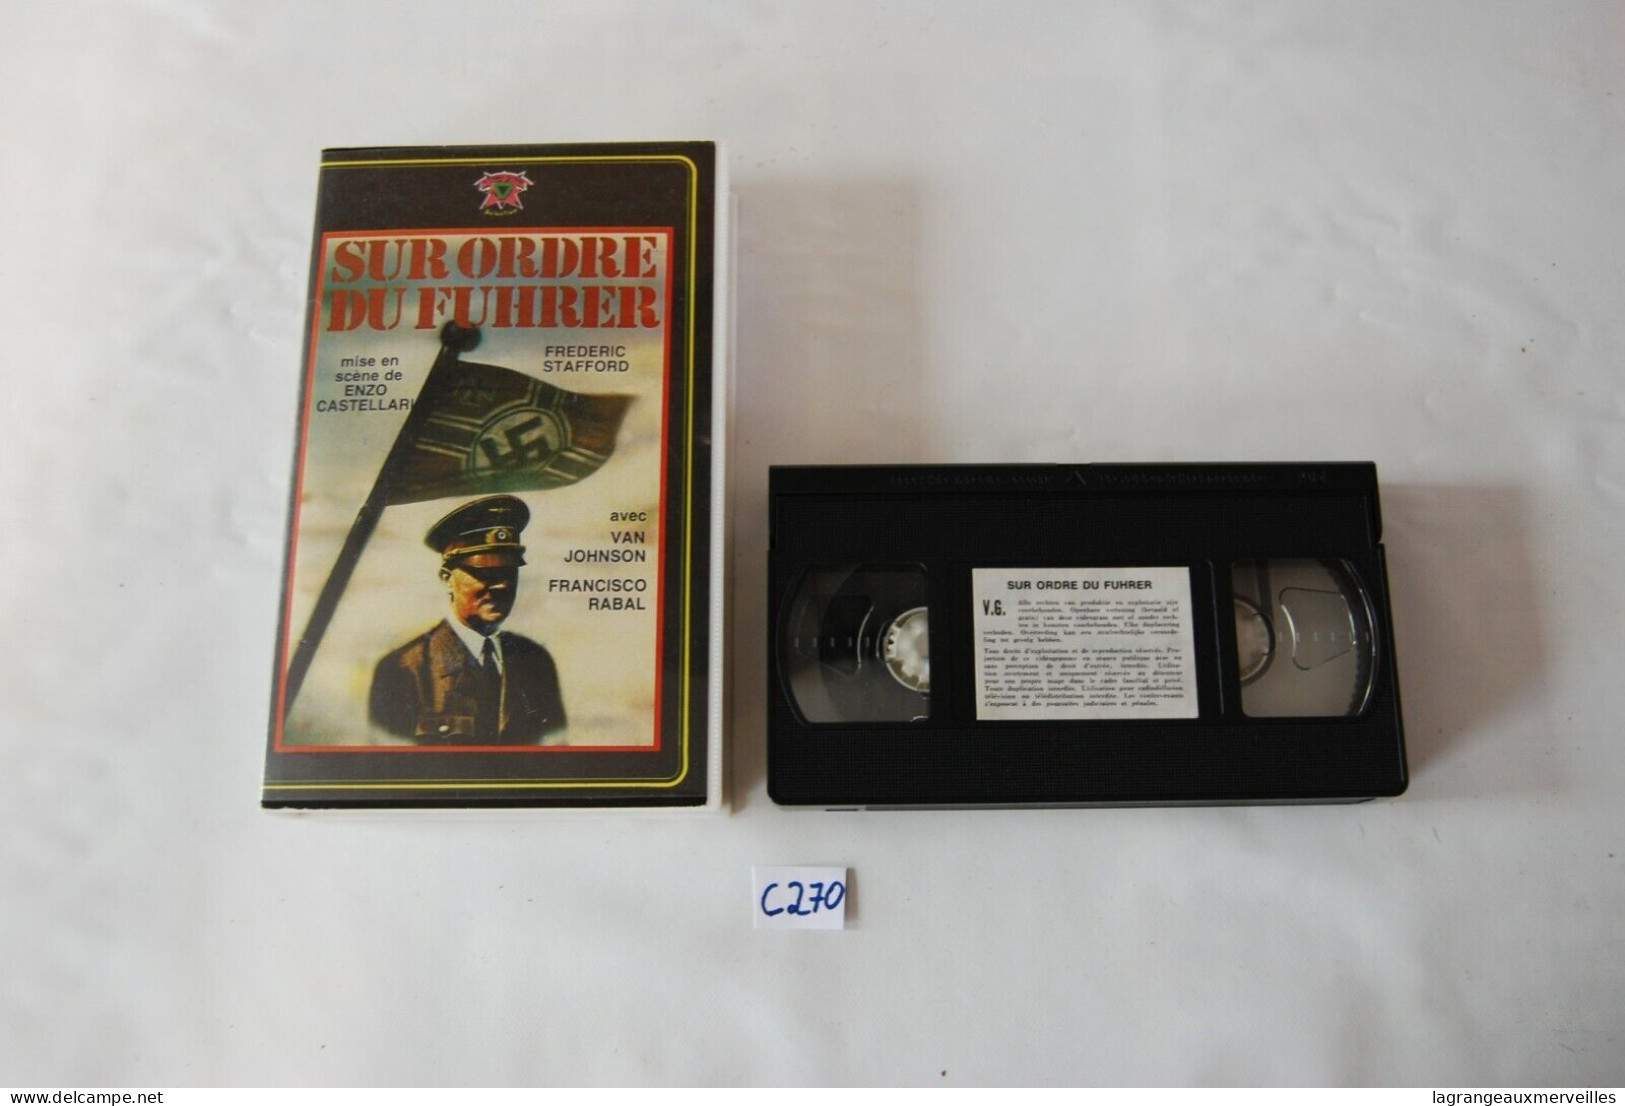 C270 - K7 VIDEO VHS - Sur Ordre Du Furher - Histoire